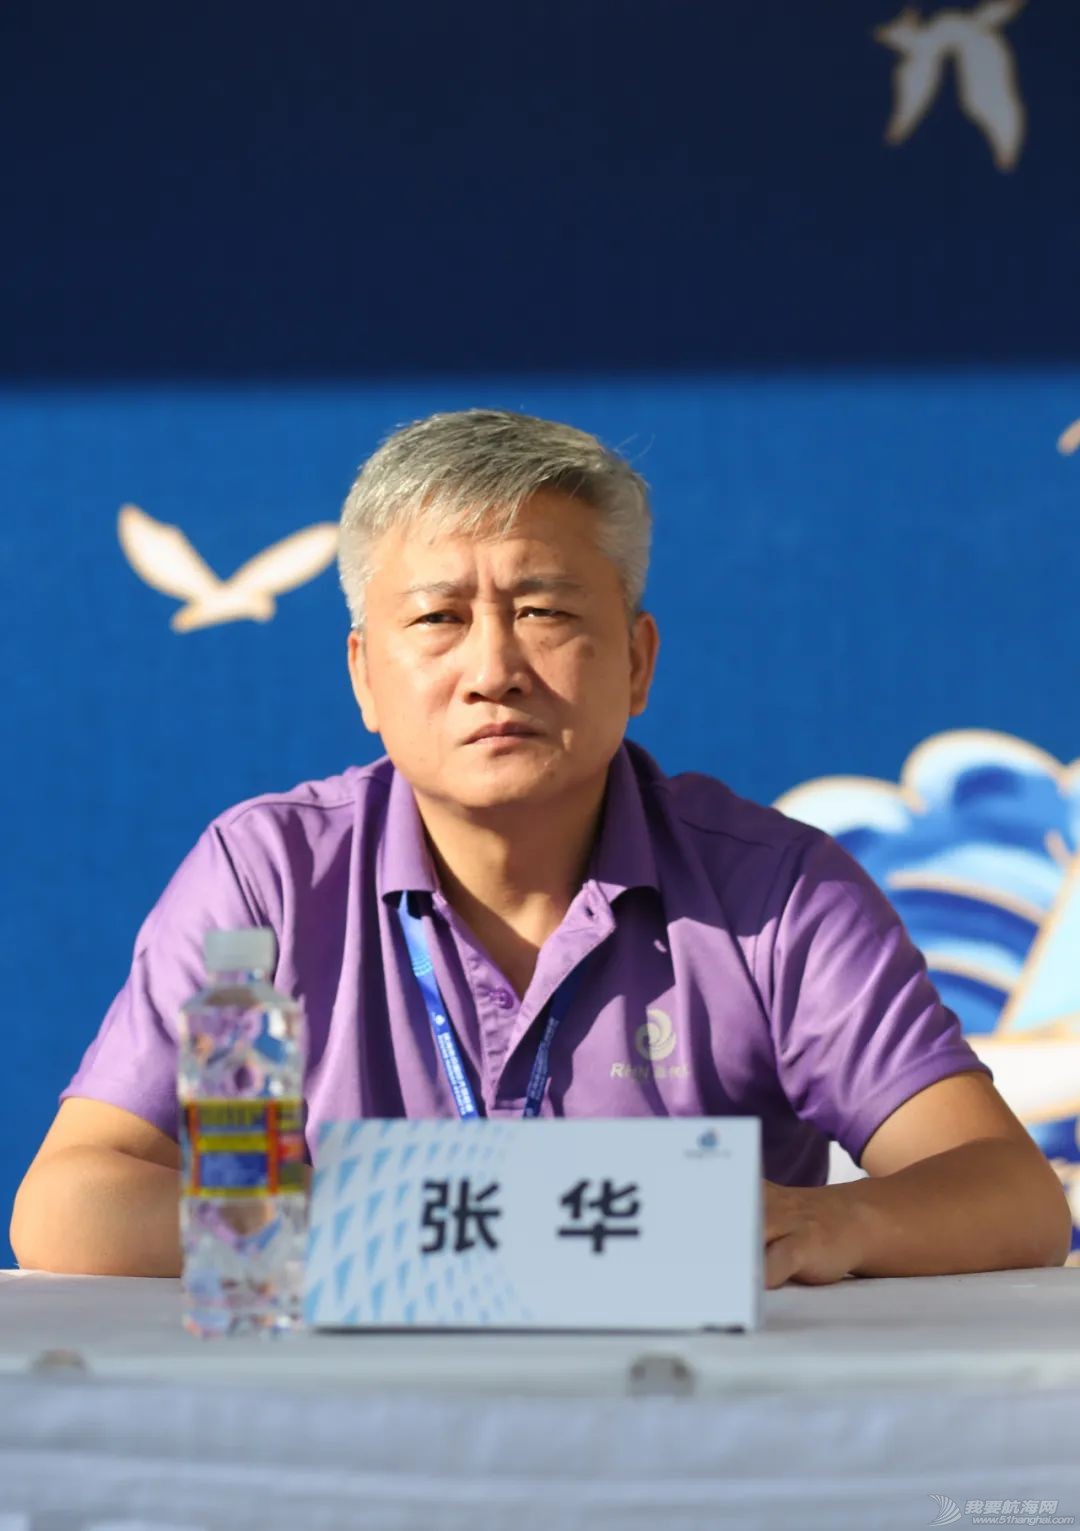 中国体育彩票杯2020第十一届海帆赛举行新闻发布会w6.jpg